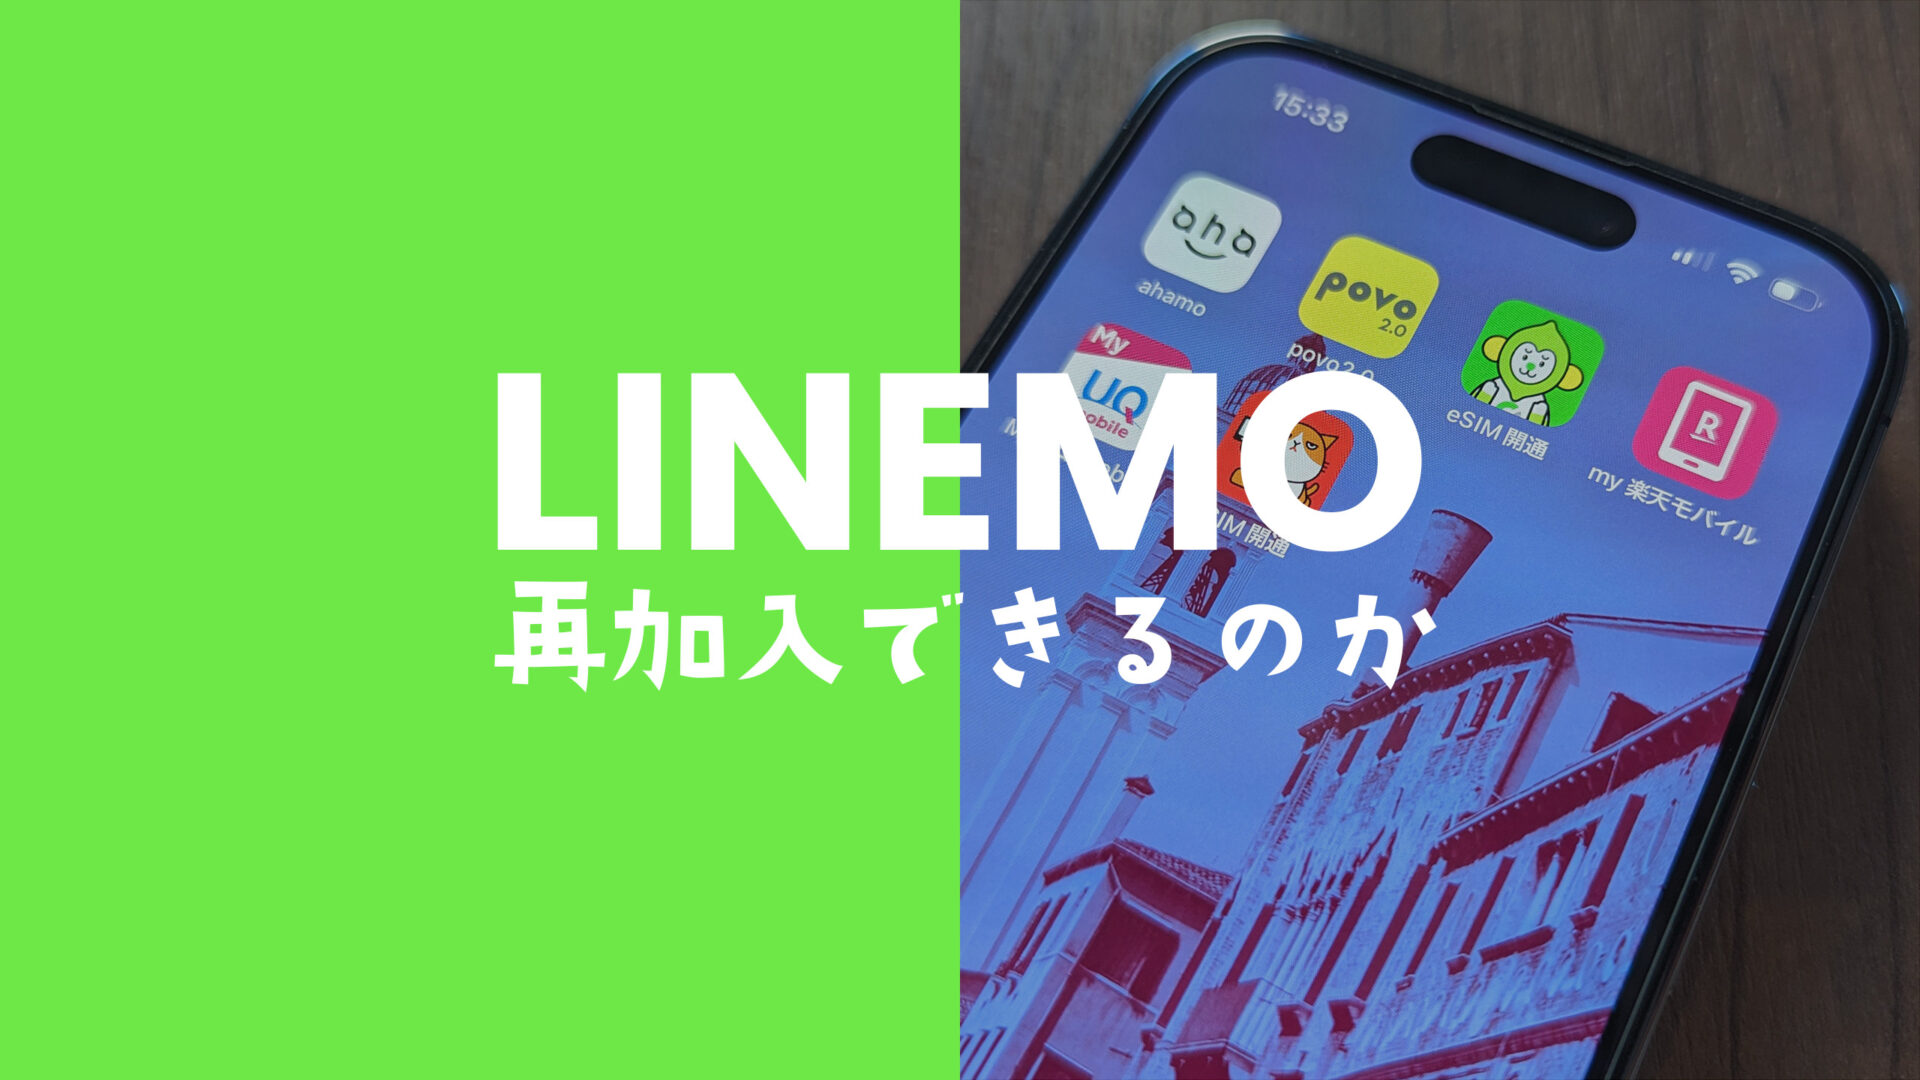 LINEMO(ラインモ)の再契約は解約後にできるが同じ番号で申込はできない。のサムネイル画像